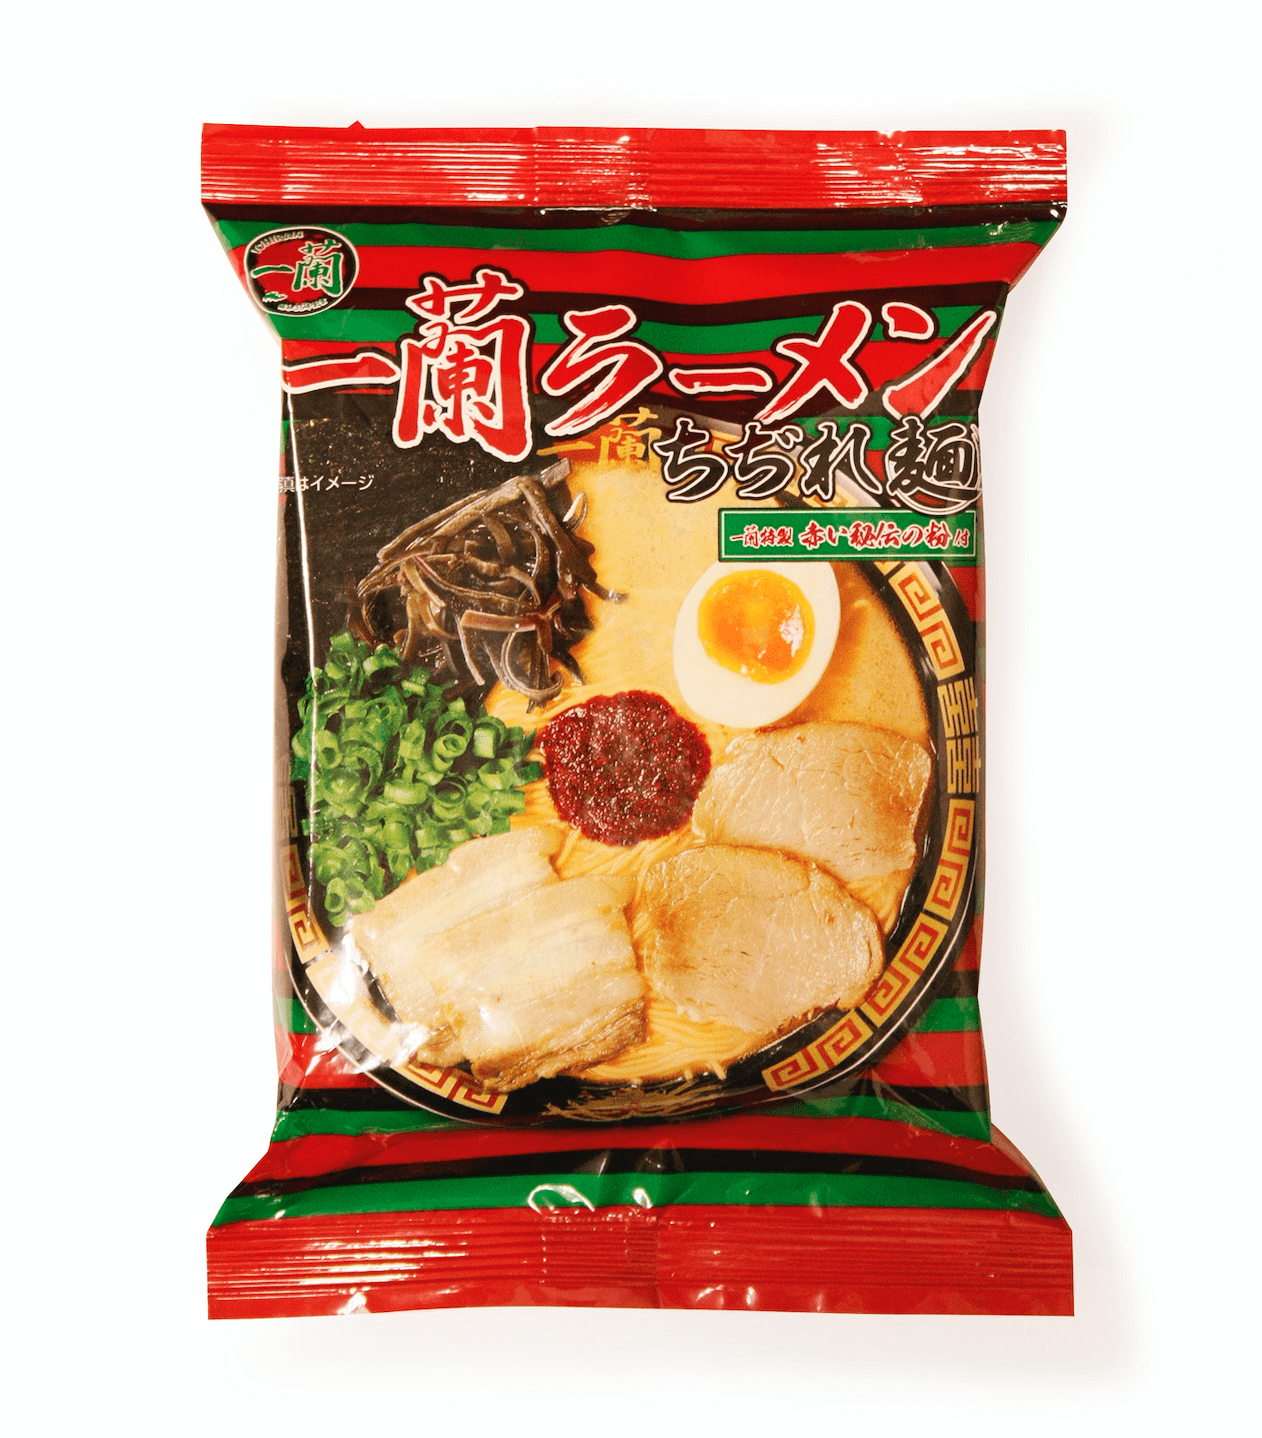 Ichiran Ramen takeaway noodles